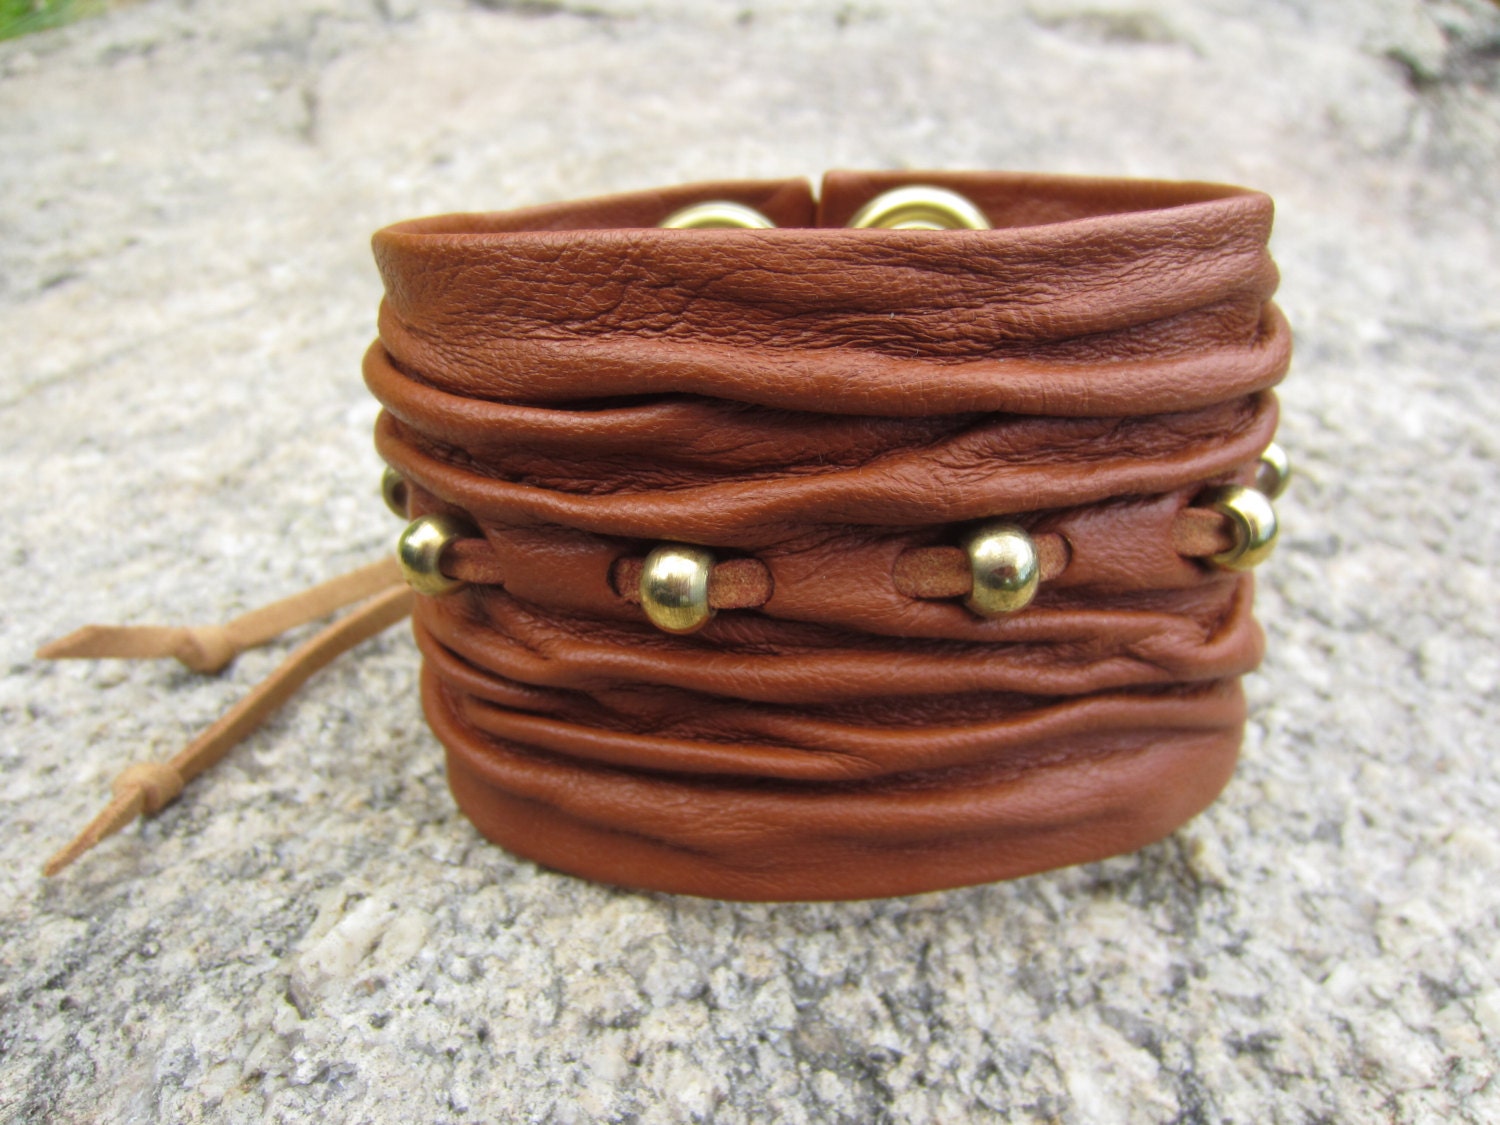 Bushido Leather Wrap Bracelet, Handmade Fine Jewelry